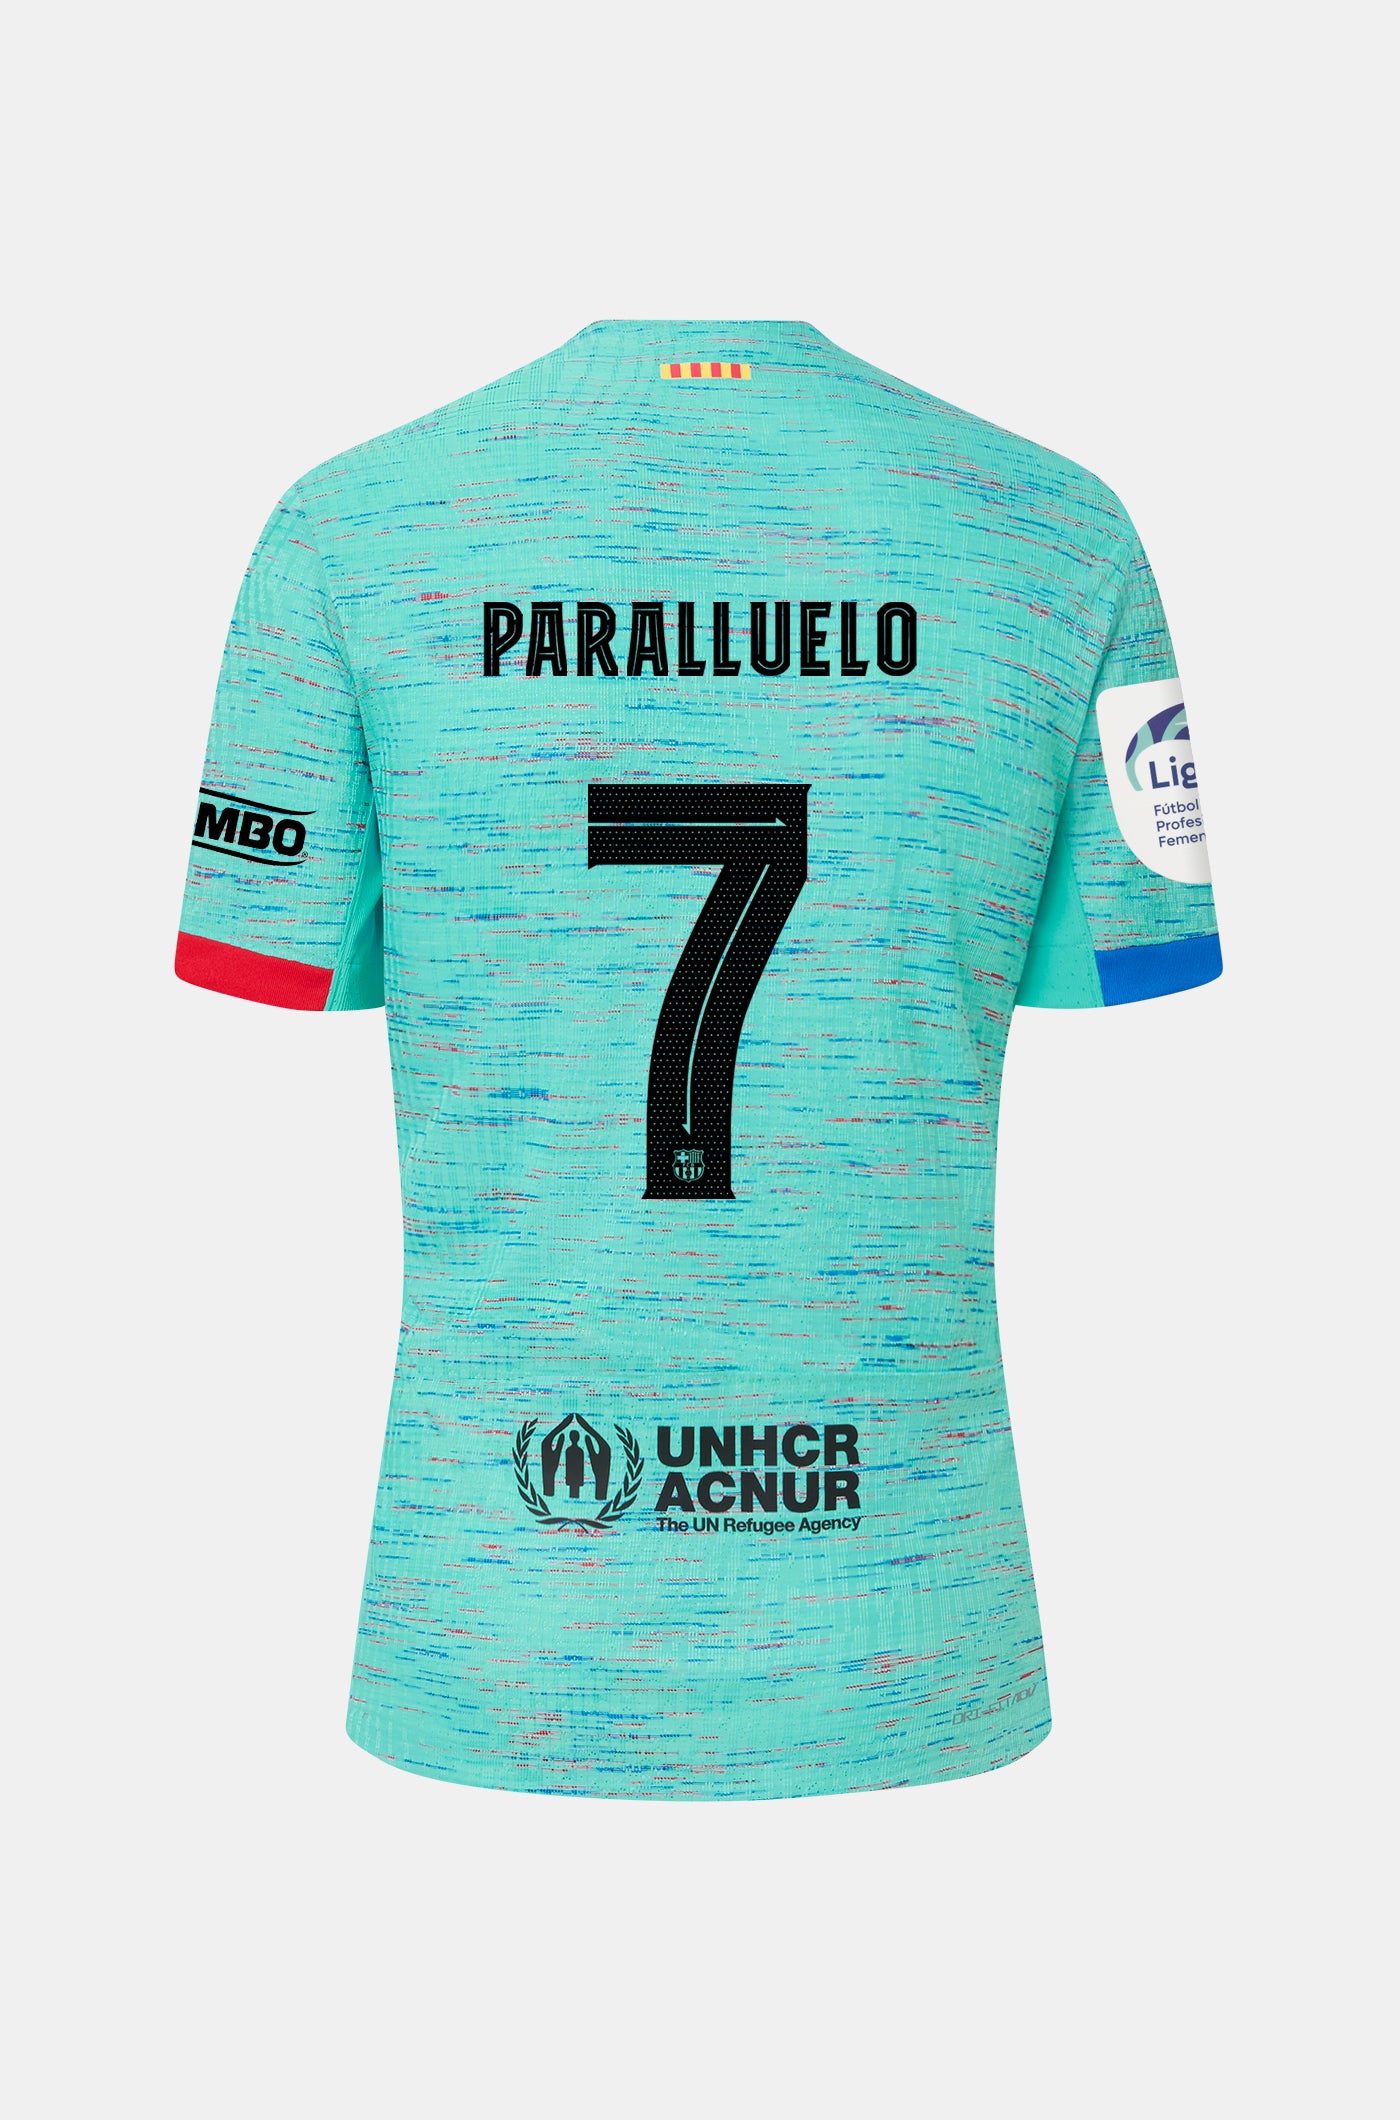 Liga F FC Barcelona third shirt 23/24 – Men - PARALLUELO